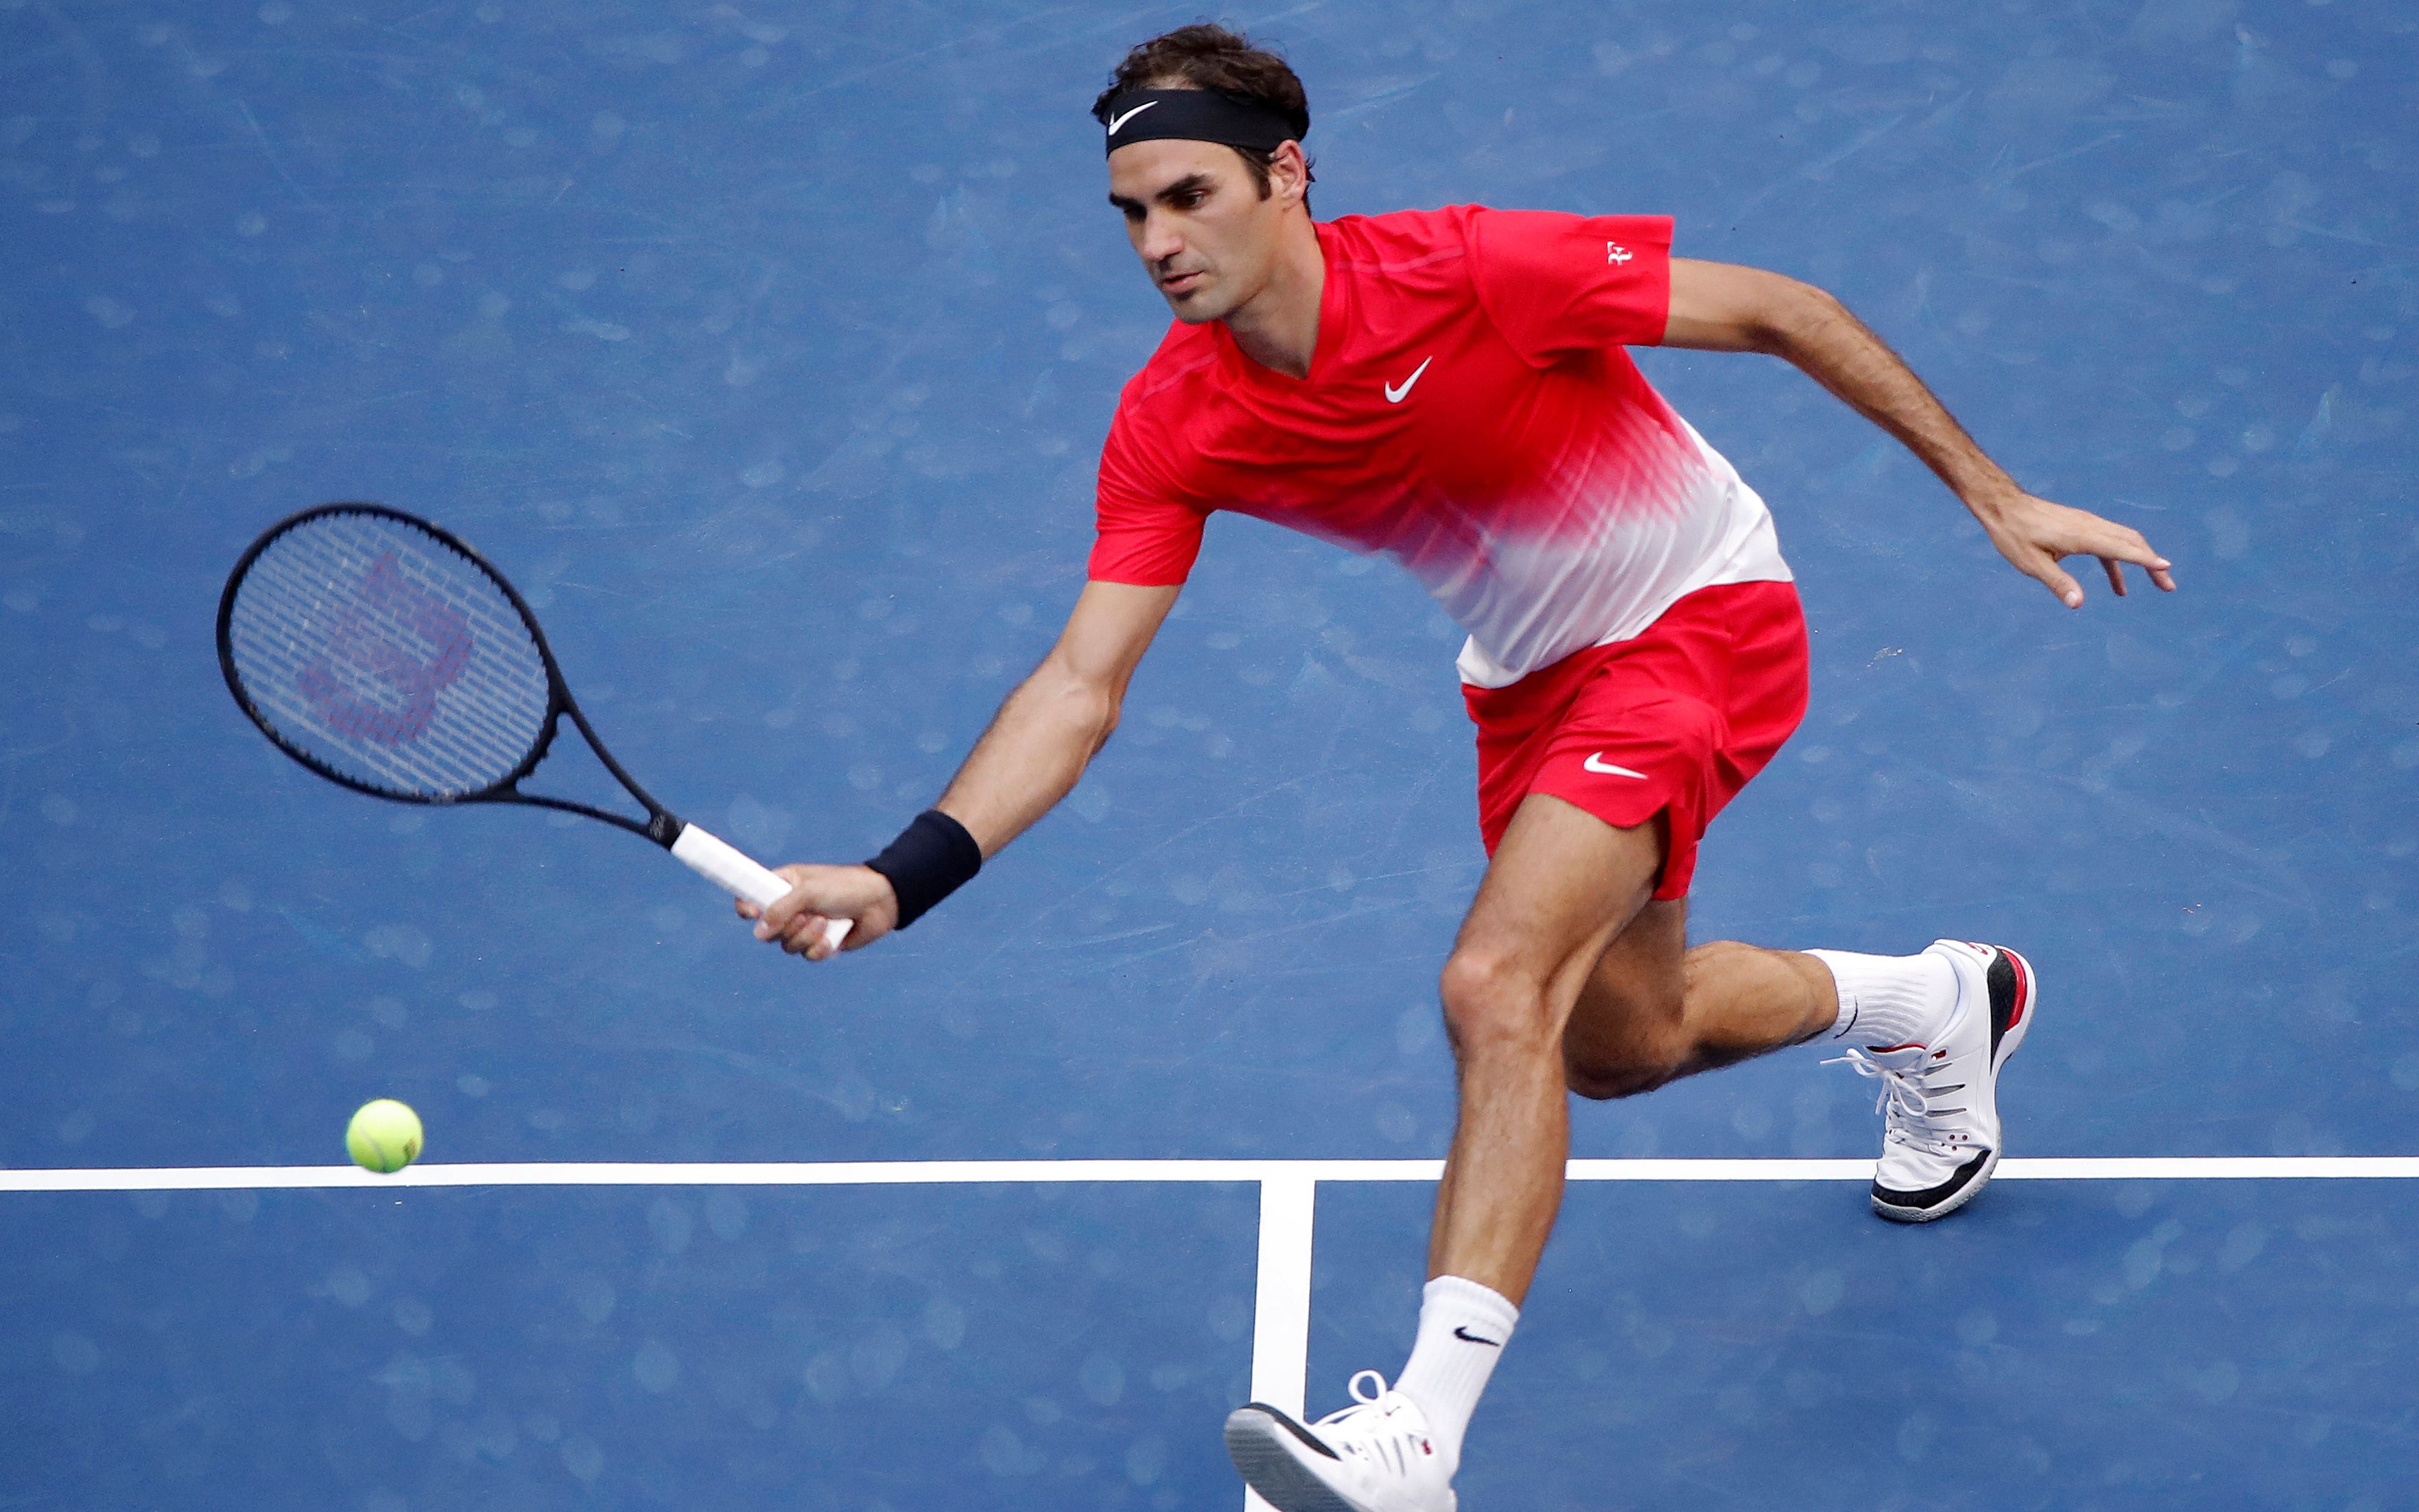 费德勒-Roger Federer - I Call it Genius (HD)（职业生涯击球精彩瞬间！）_运动_生活_bilibili_哔哩哔哩